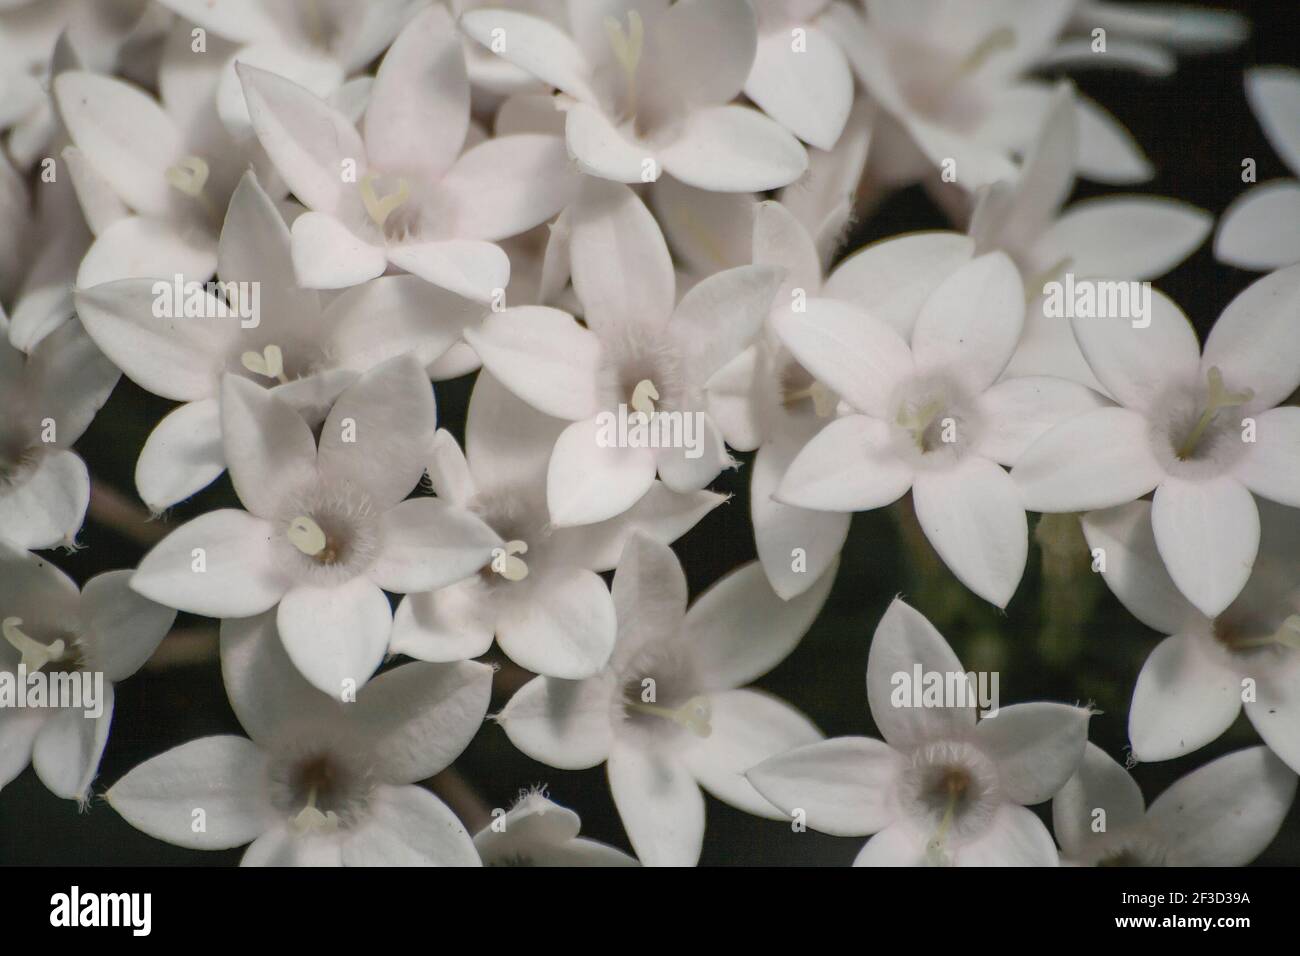 Pentas lanceolata, egyptian starcluster white flowers Stock Photo